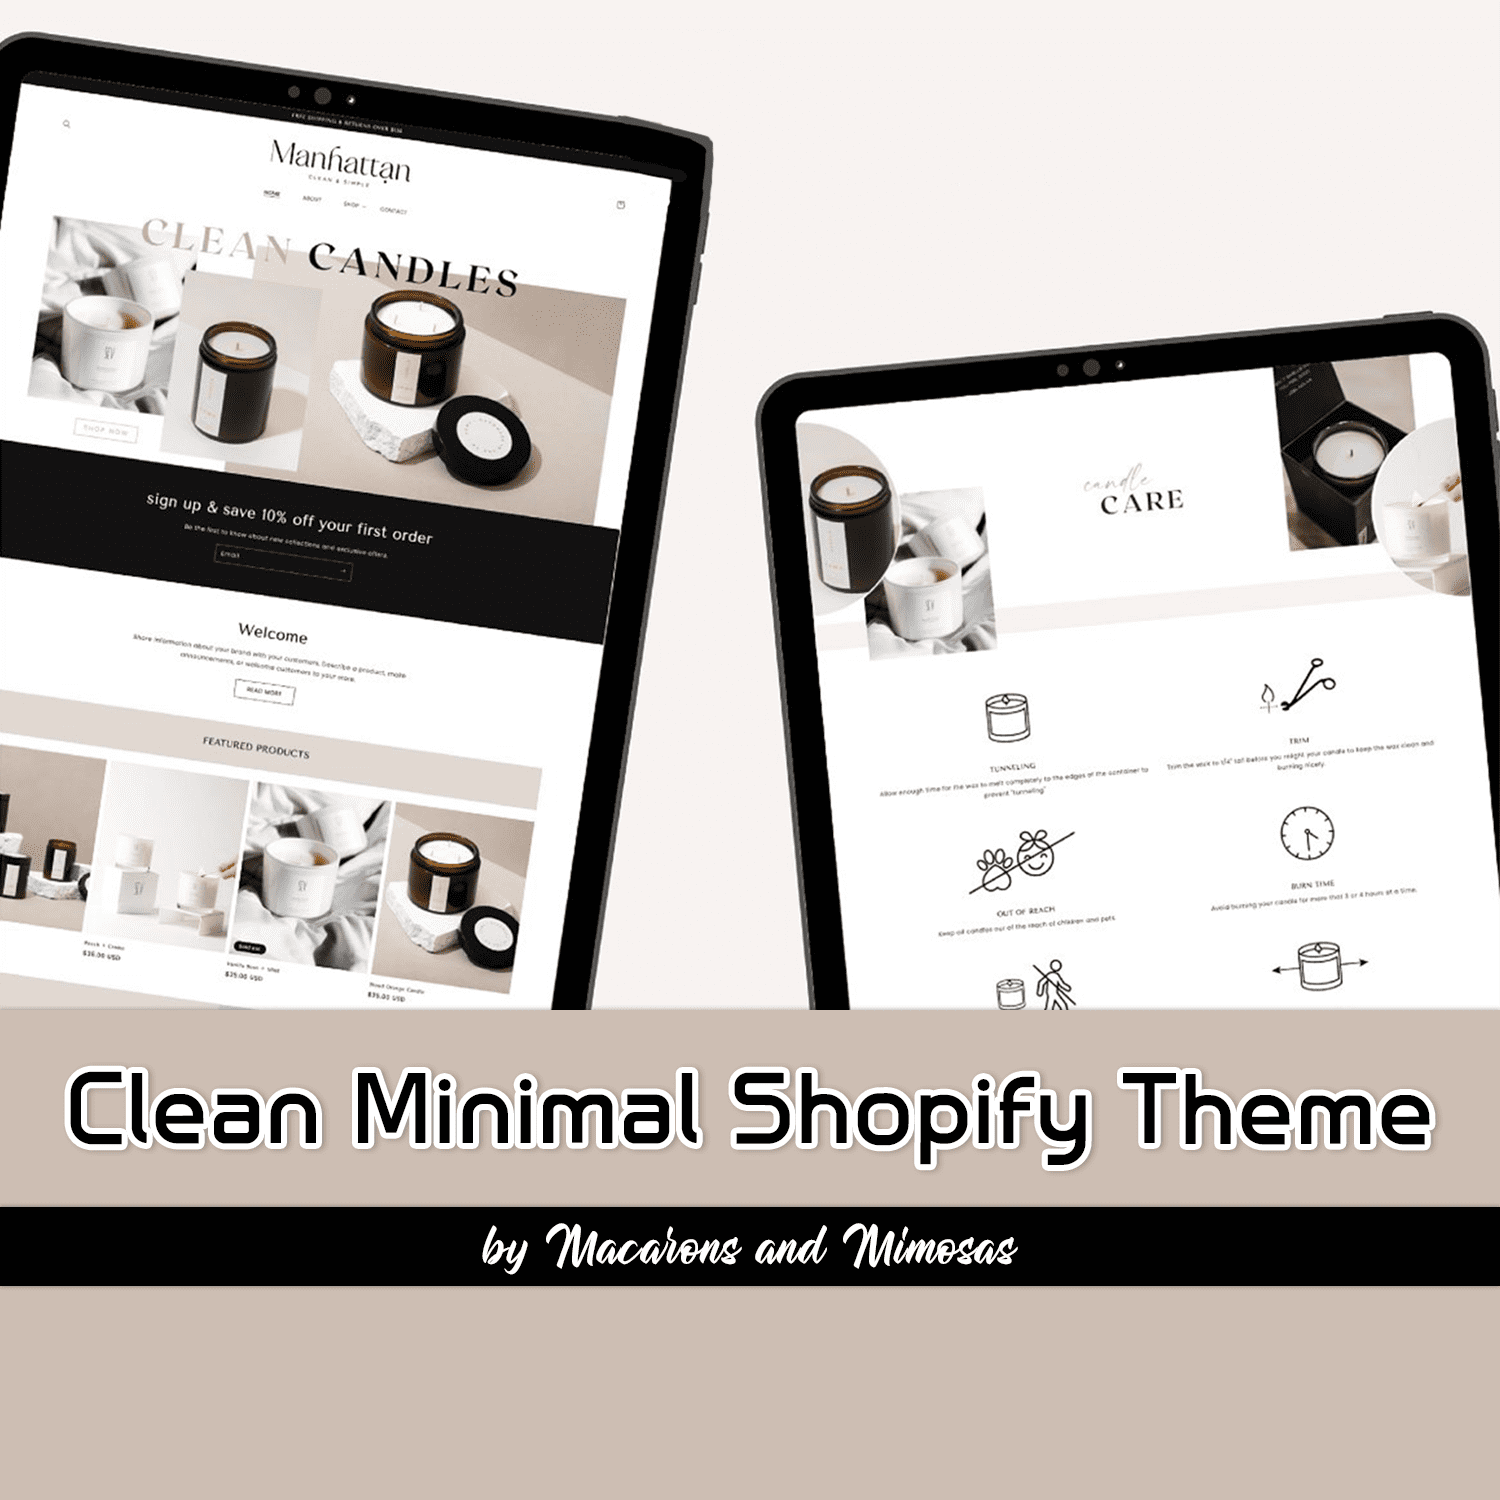 Clean Minimal Shopify Theme.